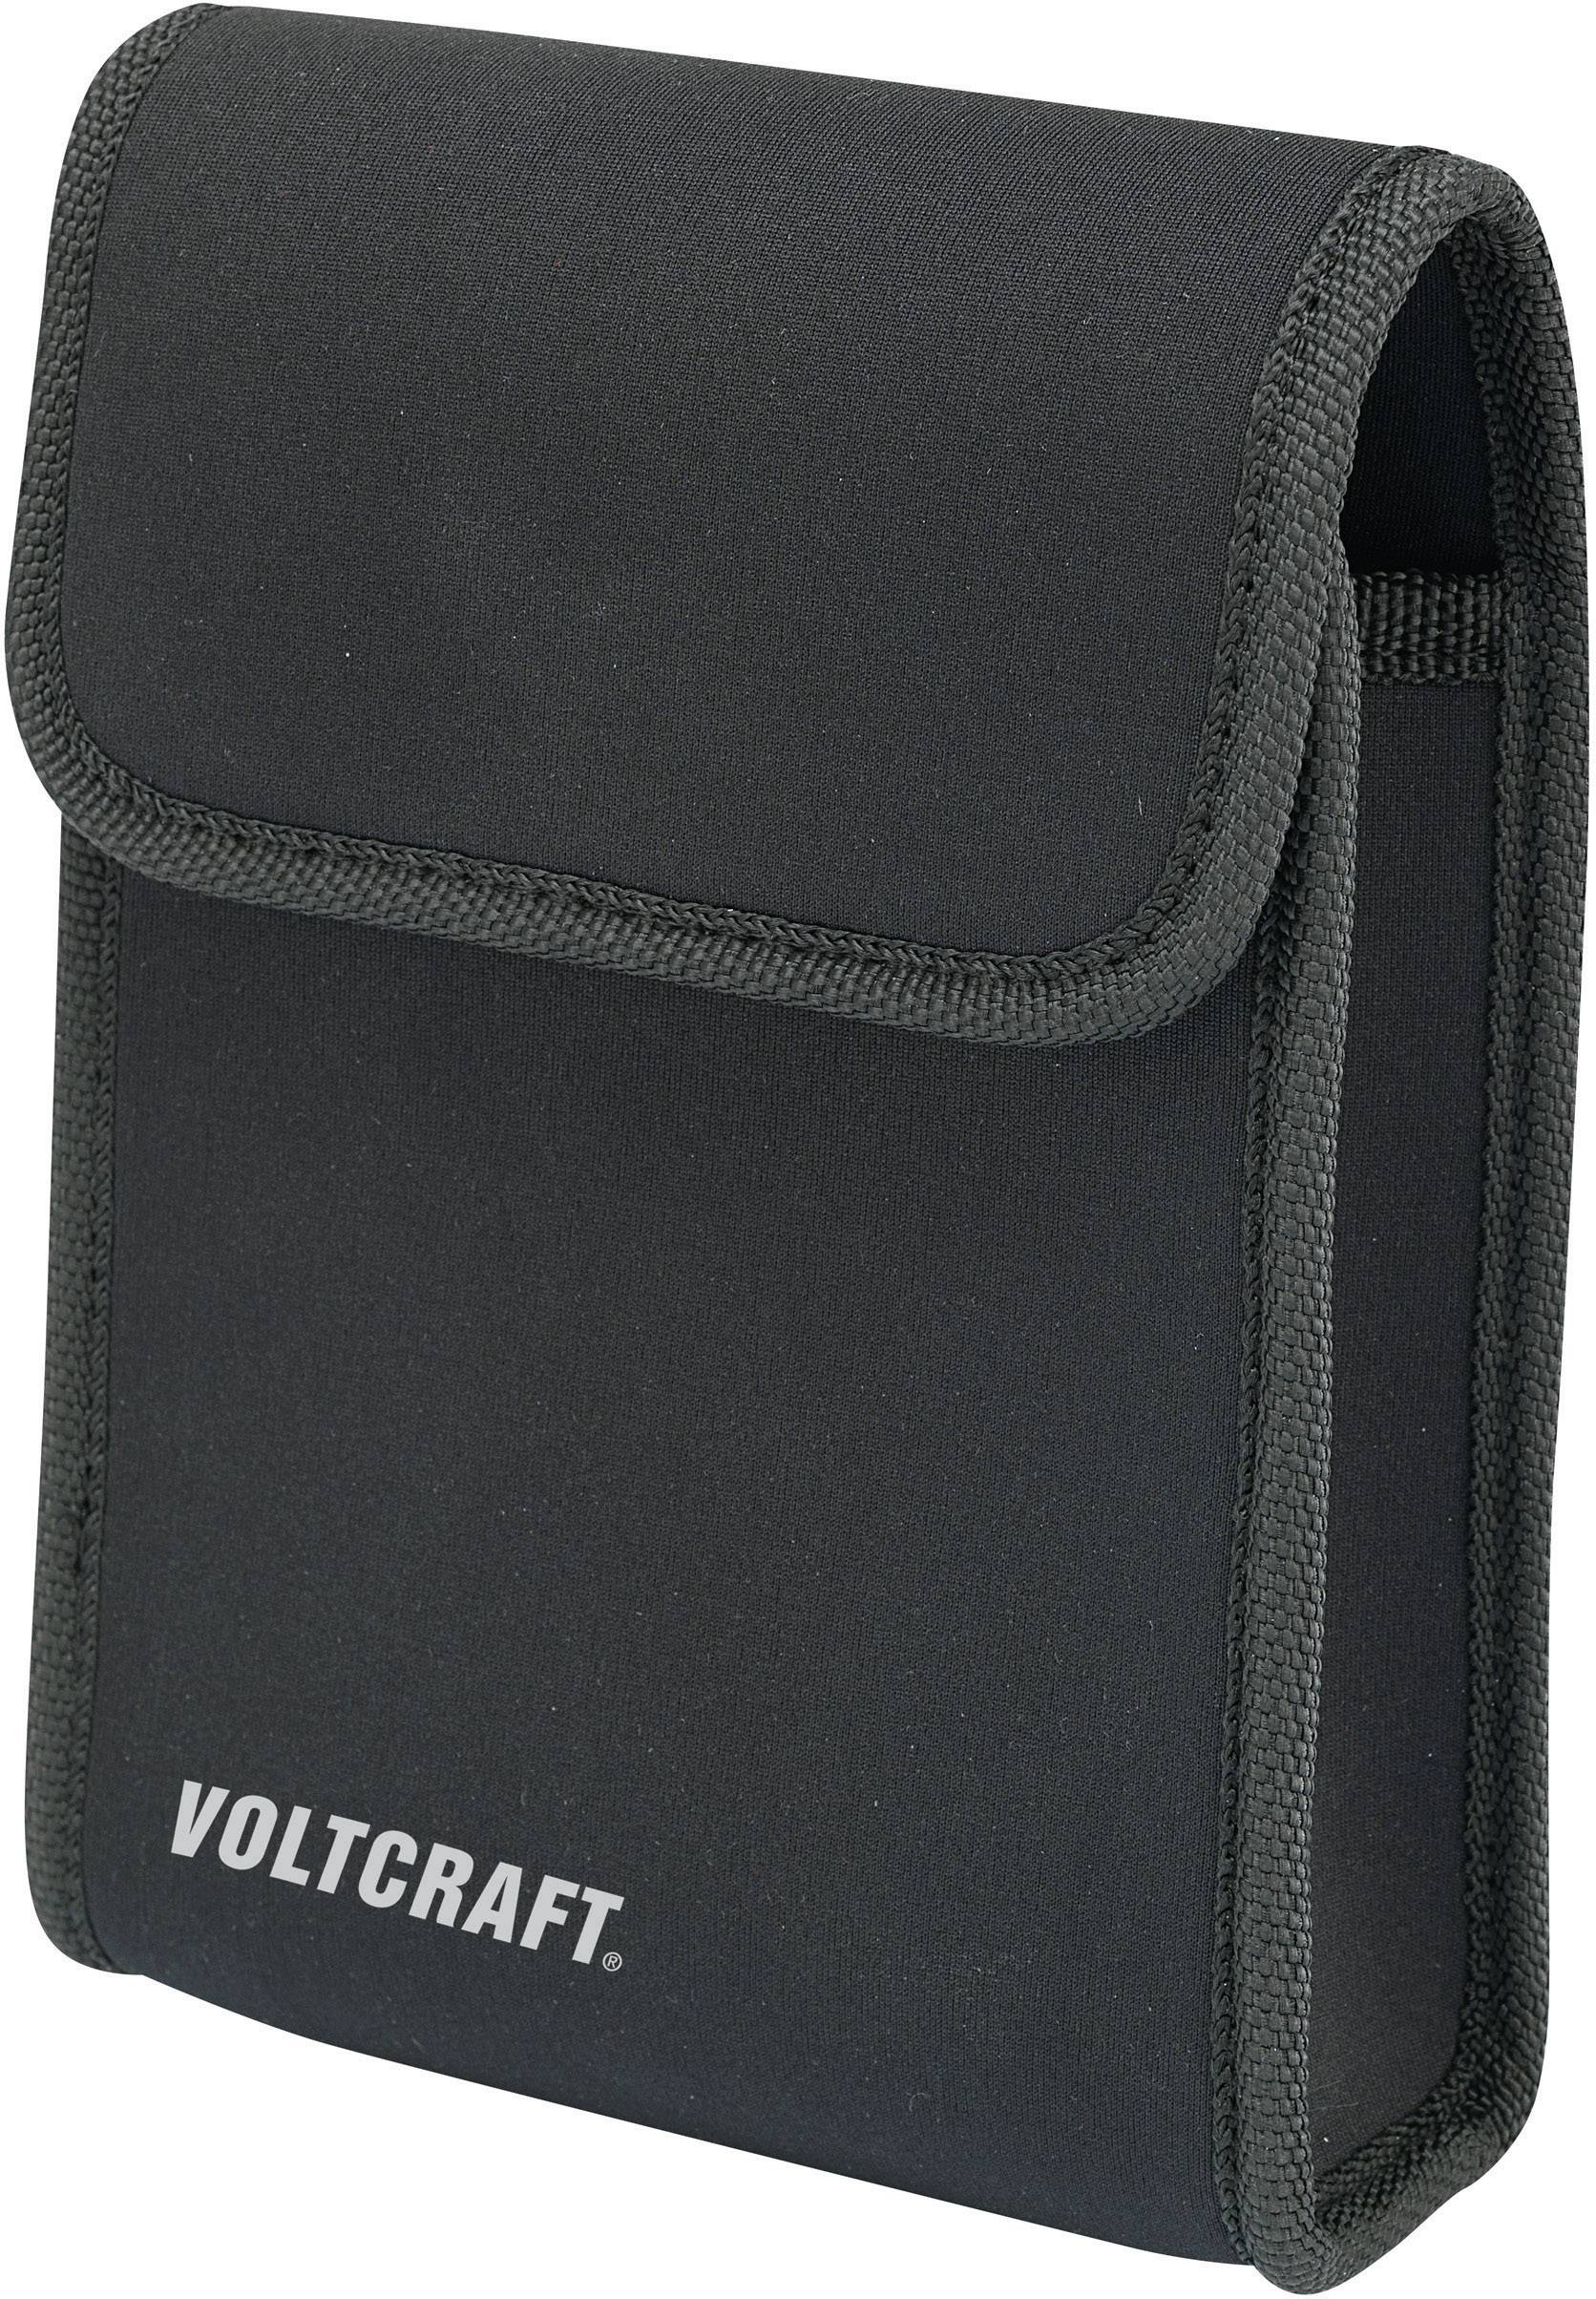 VOLTCRAFT VC-BAG 100 Sac pour dispositif de mesure Trousse Petite convient pour VC135 VC155 VC175 